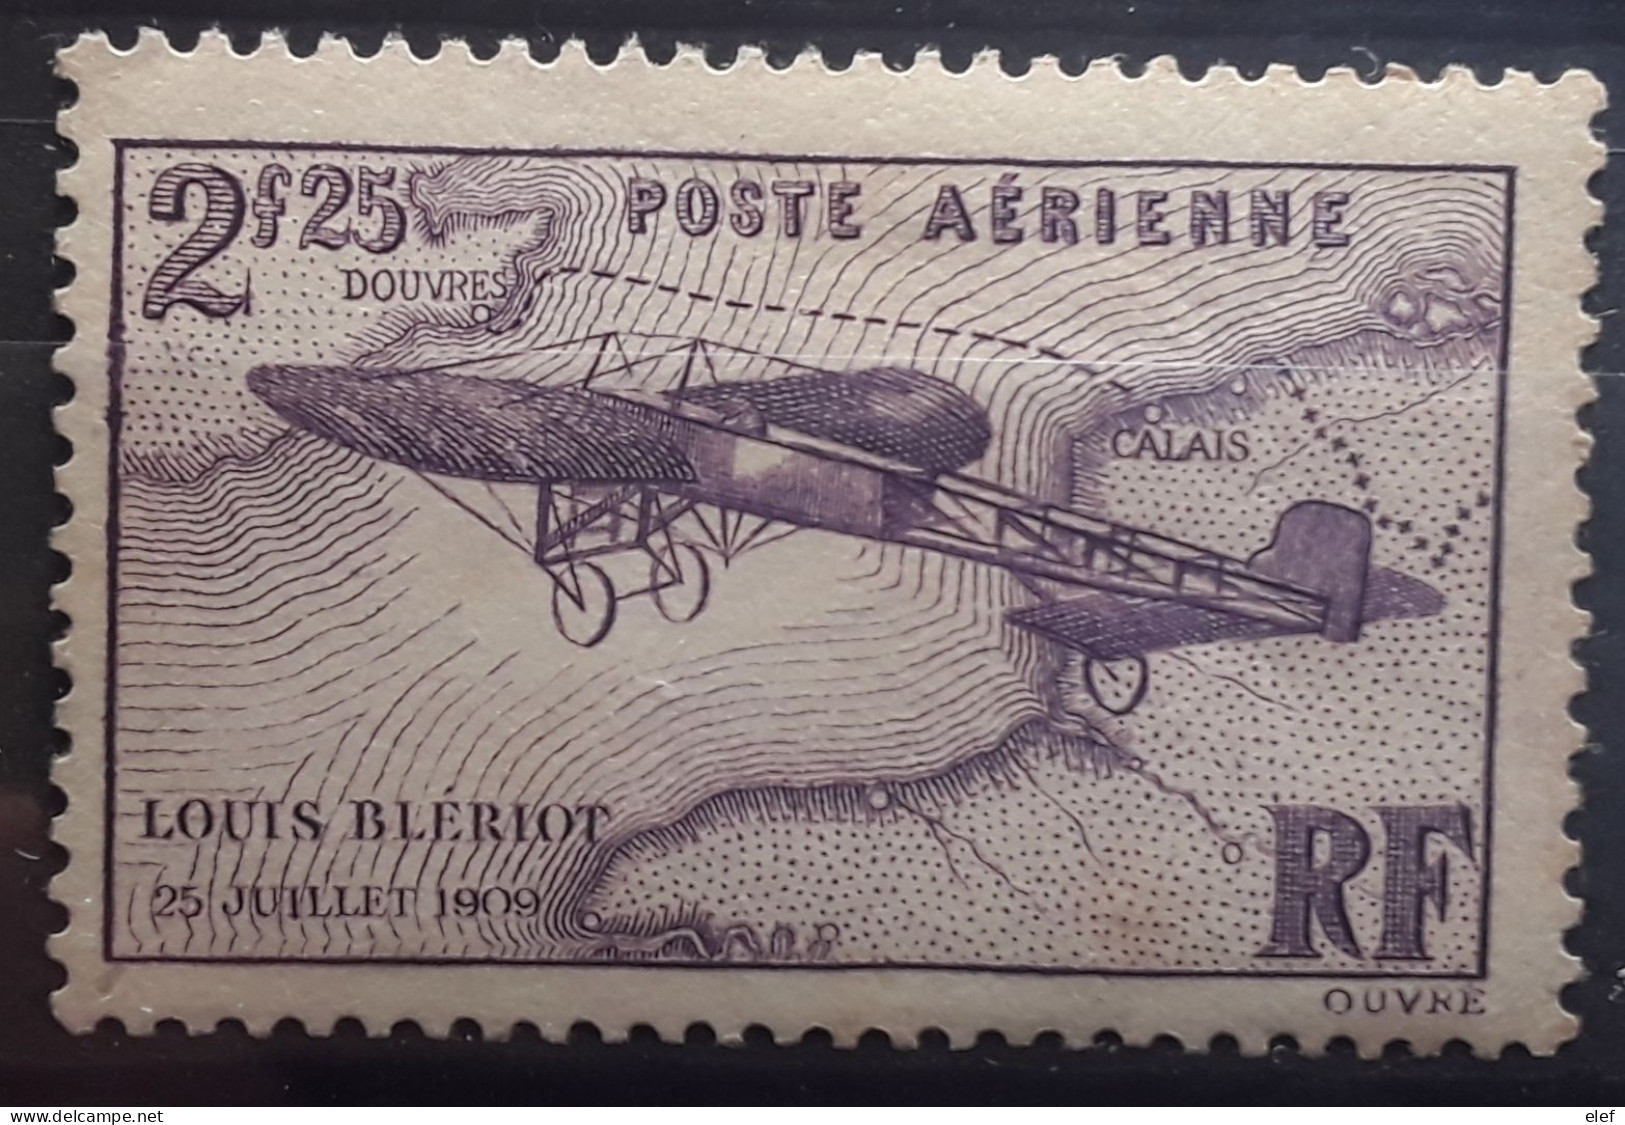 France POSTE AÉRIENNE AIRMAIL 1934 Traversée De La Manche Par BLERIOT , Yvert No 7, Neuf * MH BTB Cote 25 Euros - 1927-1959 Neufs